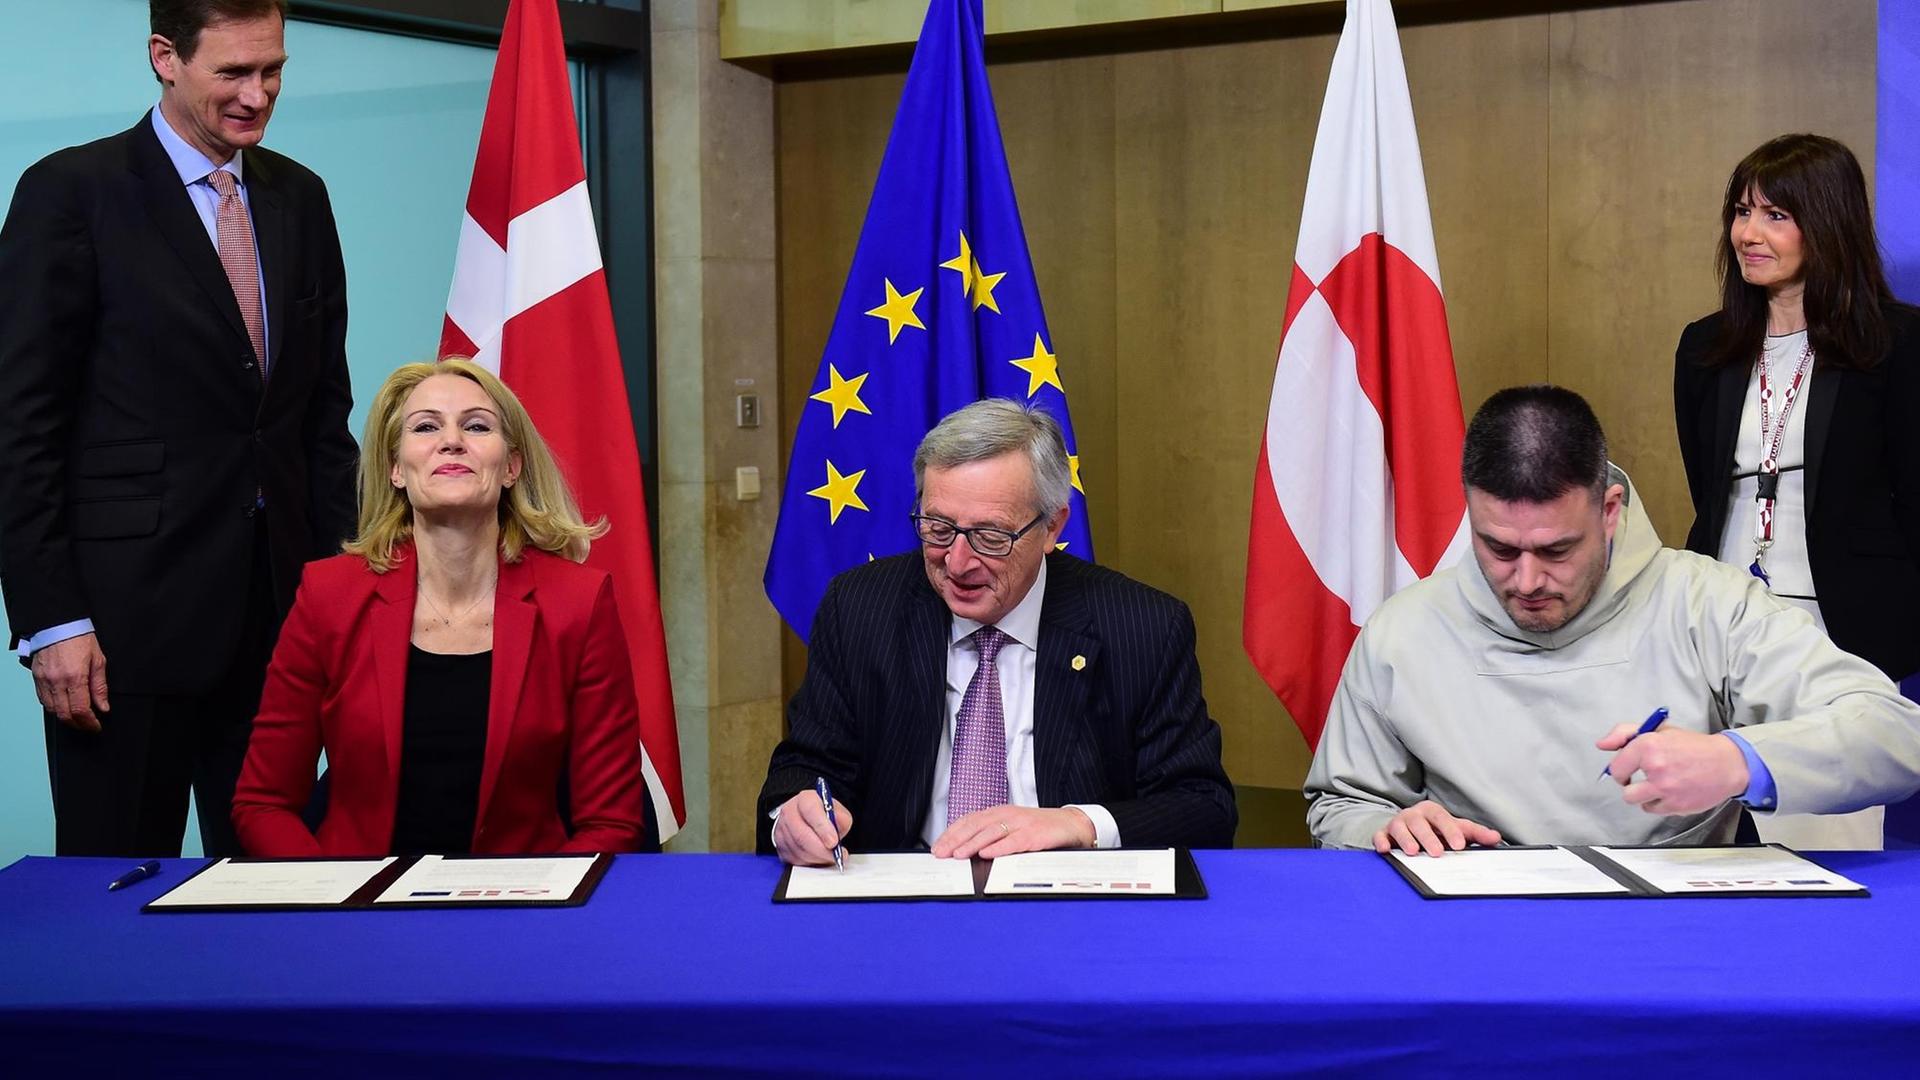 Dänemarks Ministerpräsidentin Helle Thorning-Schmidt, EU-Kommissionspräsident Jean-Claude Juncker und Grönlands Ministerpräsident Kim Kielsen unterzeichnen eine Vereinbarung